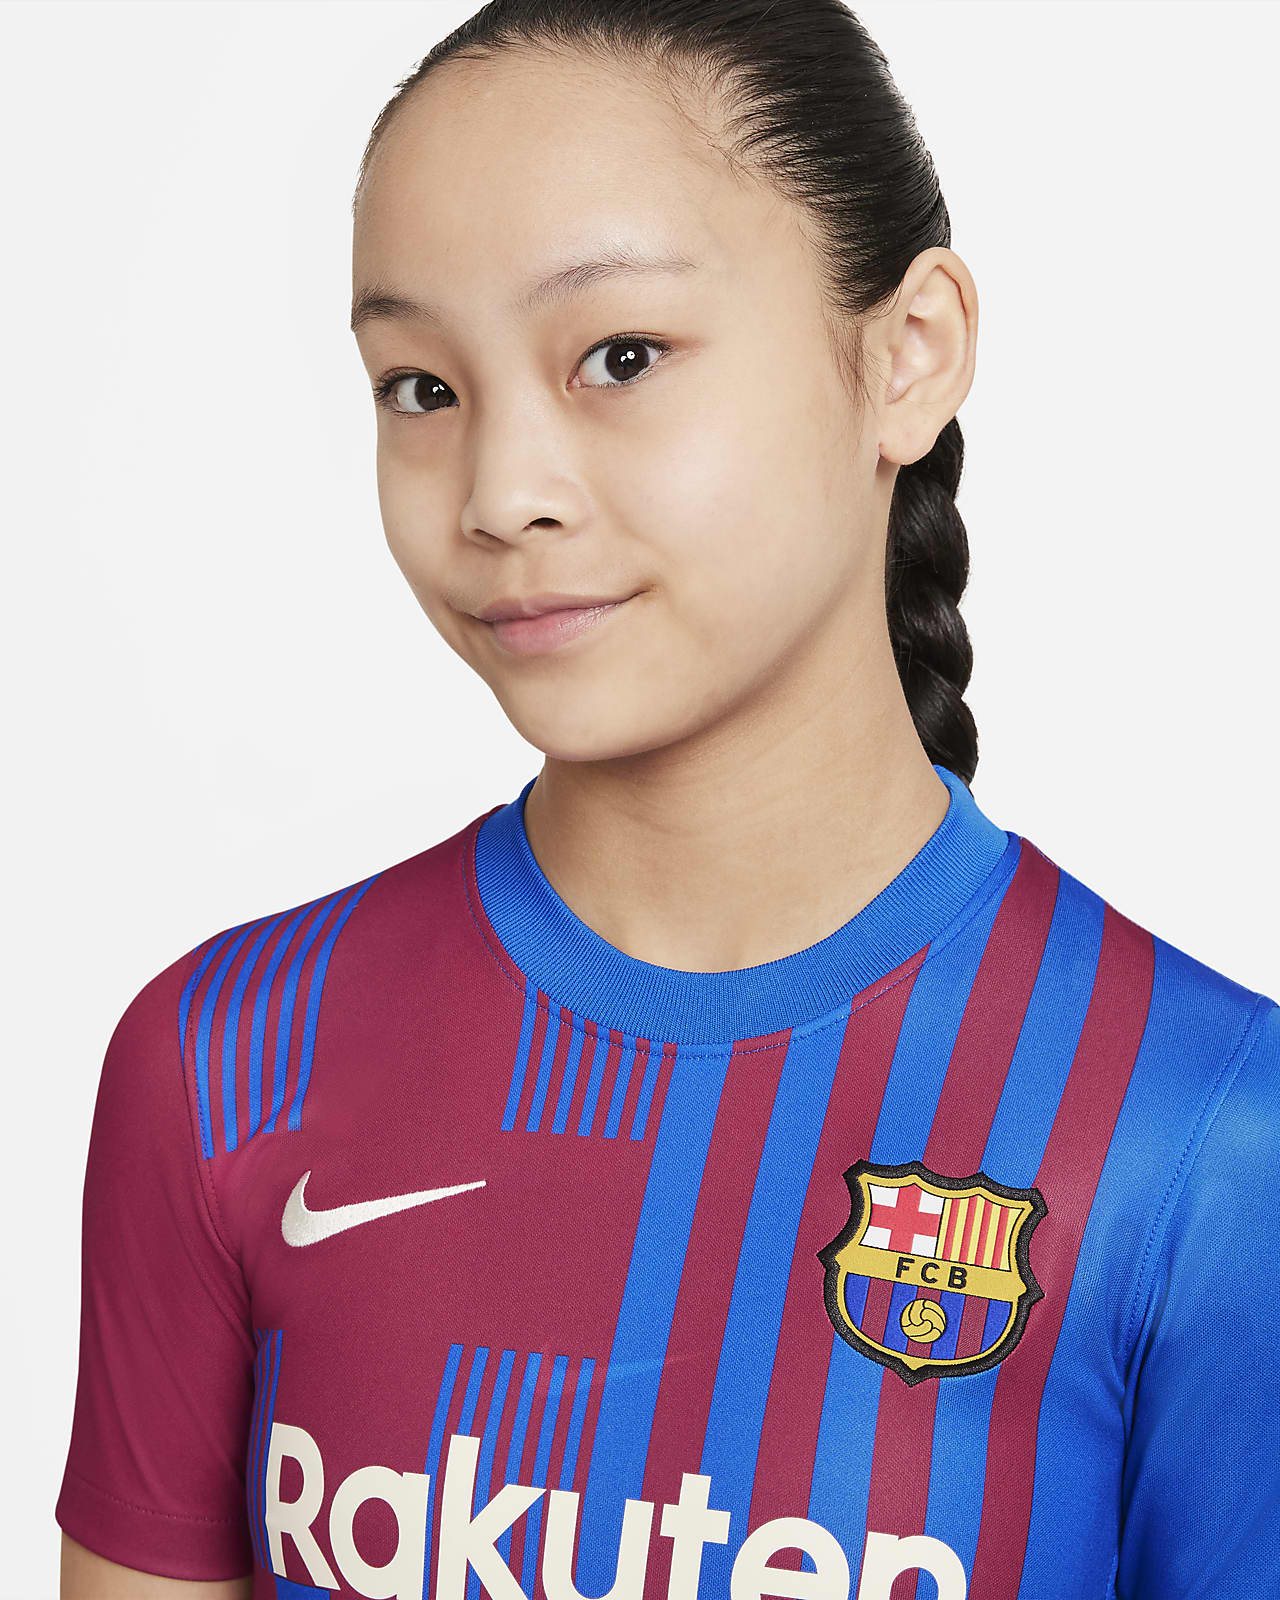 خافيير FC Barcelona 2021/22 Stadium Home Big Kids' Soccer Jersey خافيير